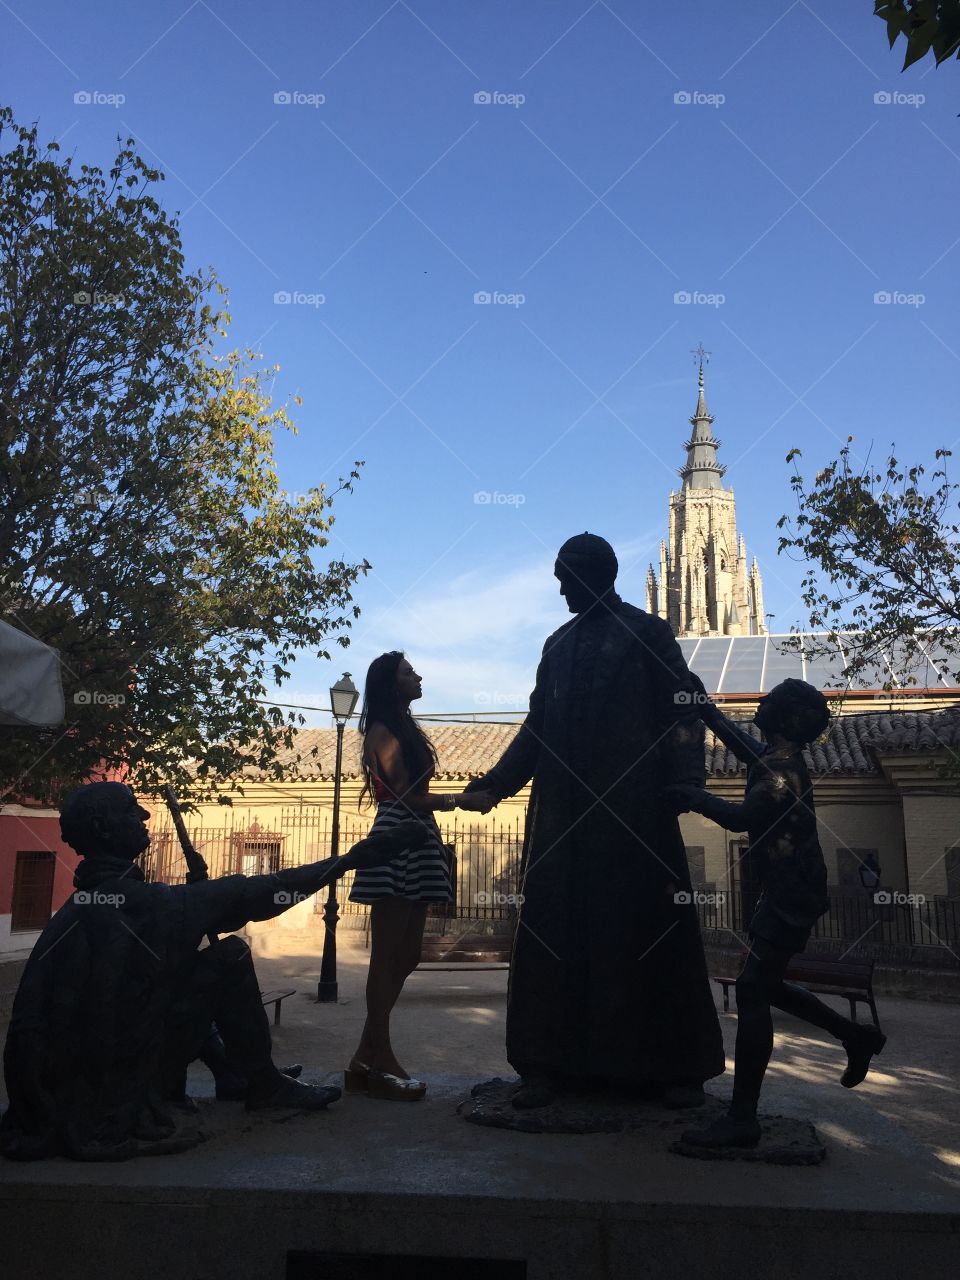 Toledo Sculptures 